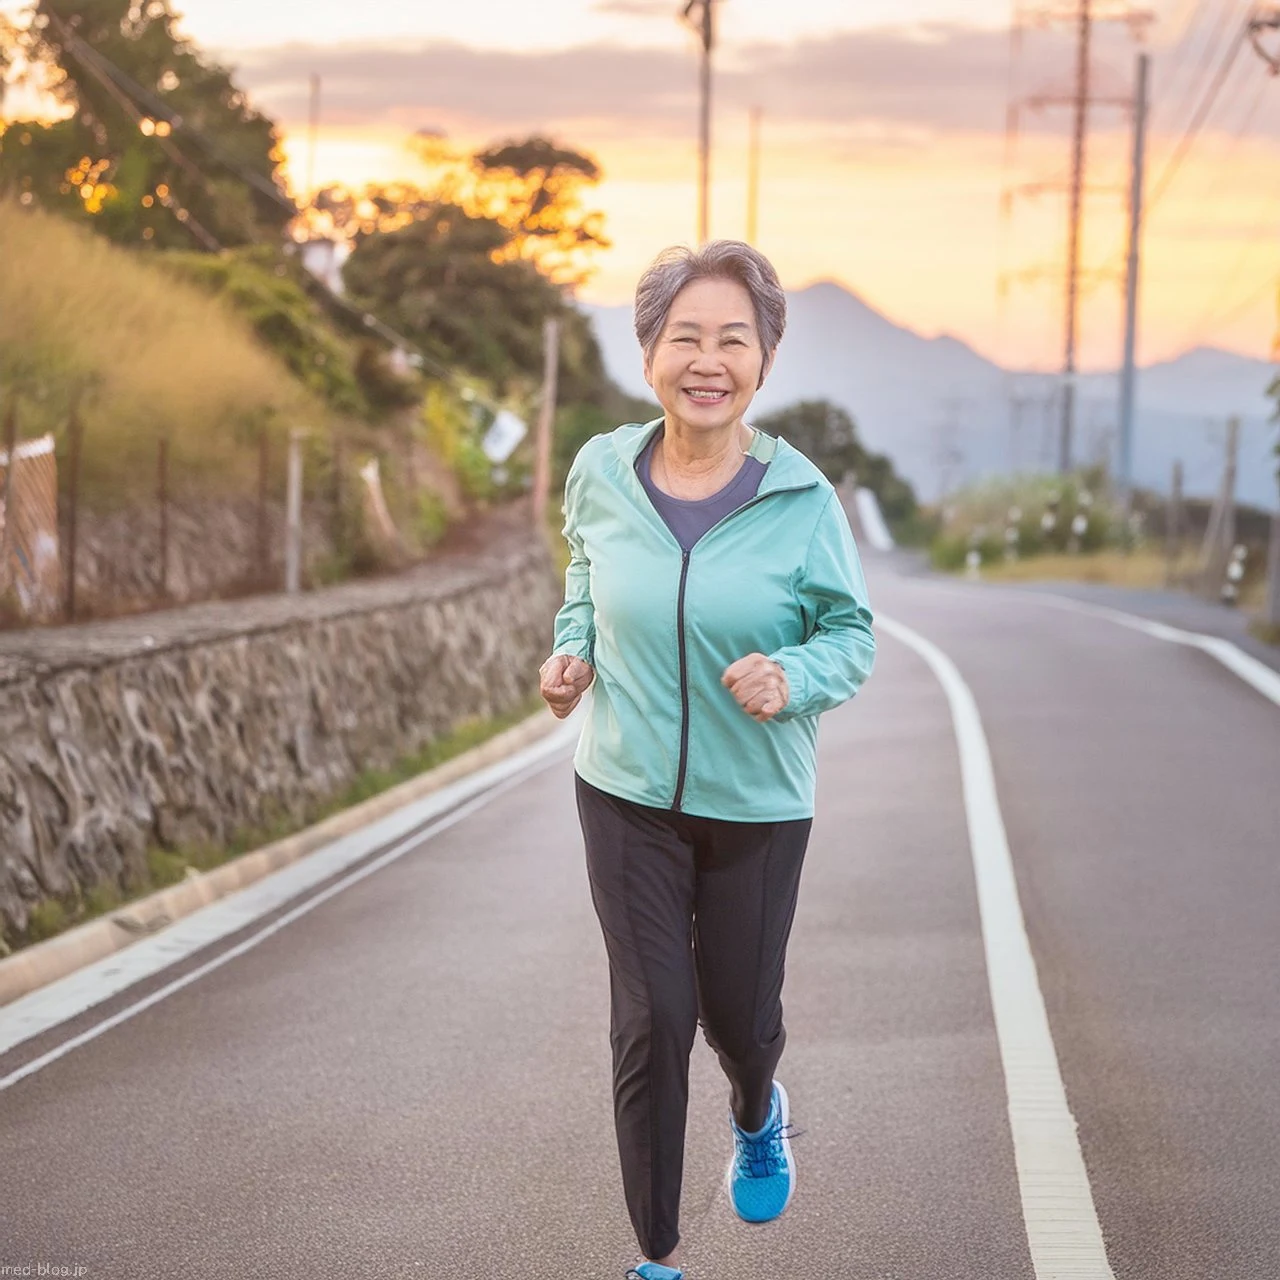 日本人の高齢女性が、ランニングウェアを着て健康のために笑顔で夕暮れの田舎道をランニングしている写真.jpg (1280×1280)